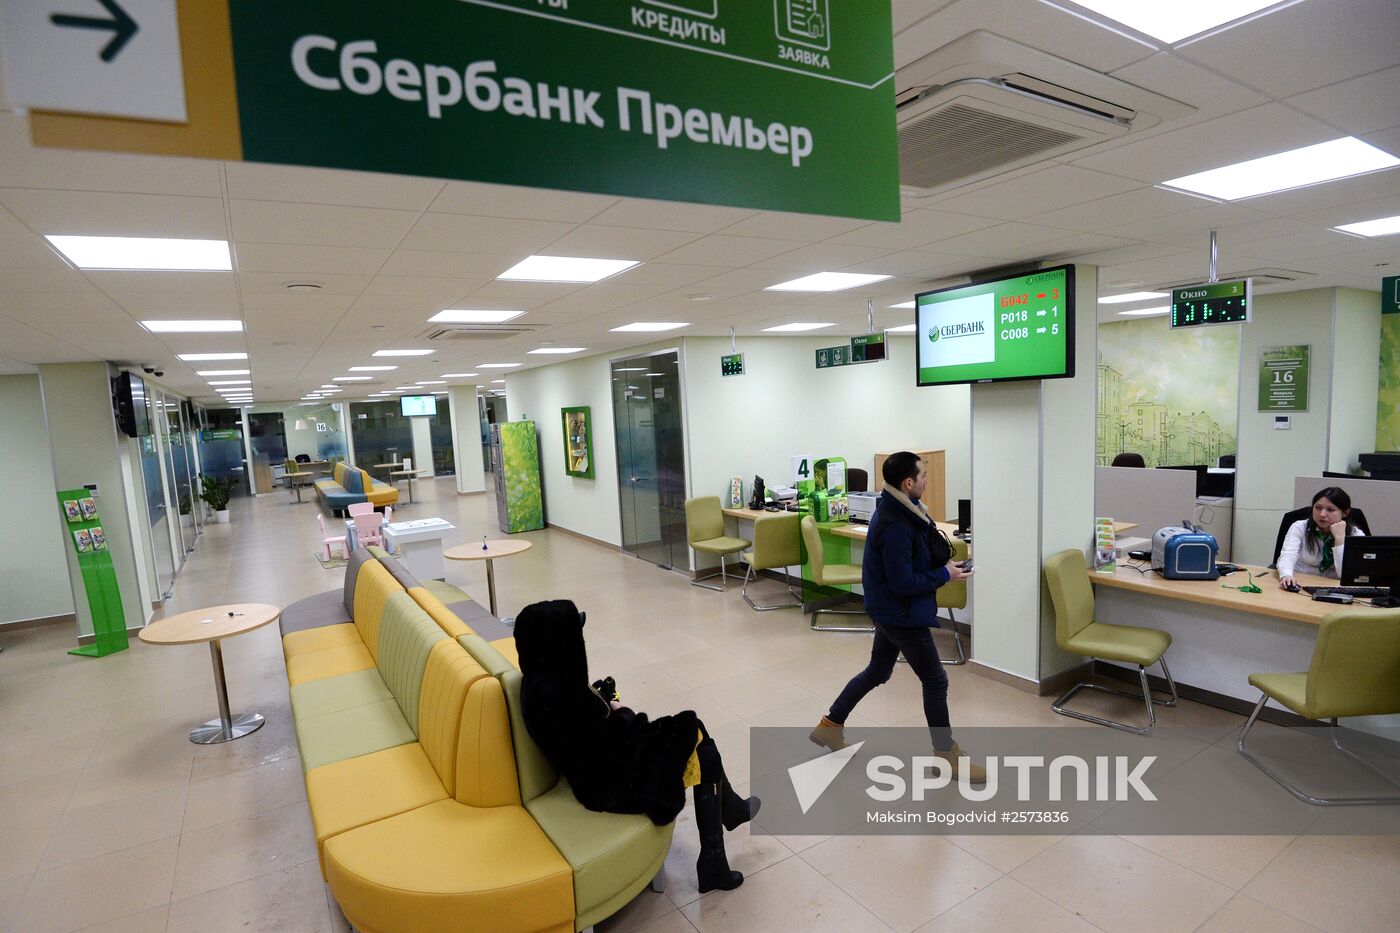 A Sberbank office in Kazan